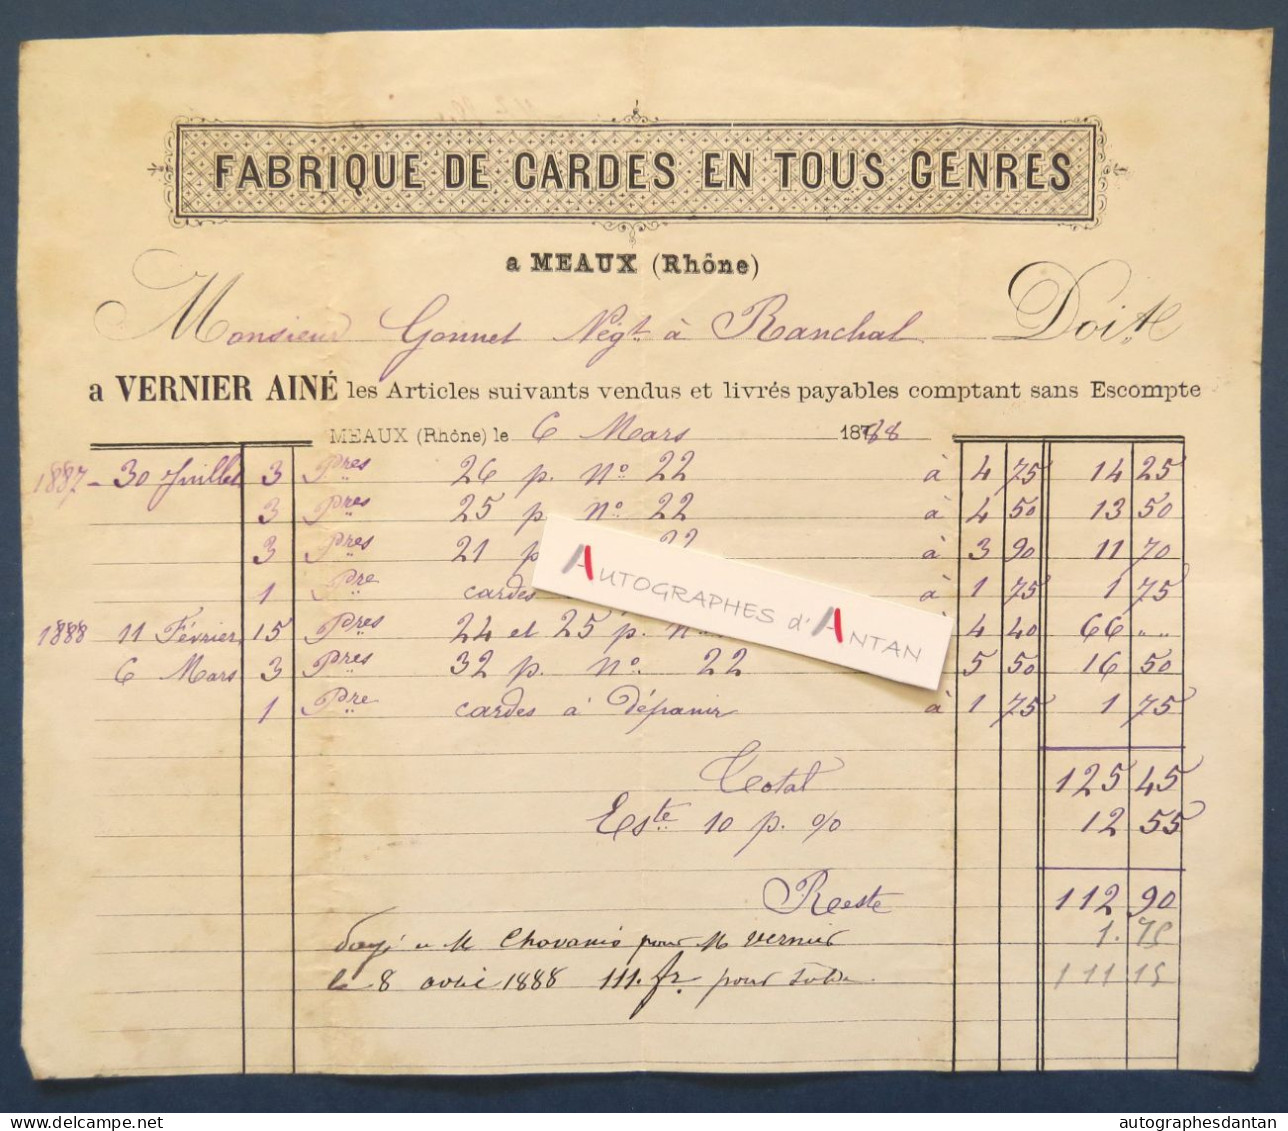 ● MEAUX (la Montagne - Rhône) 1888 - VERNIER Ainé Fabrique De Cardes En Tous Gens - Rare Facture - Gonnet à Ranchal - Old Professions